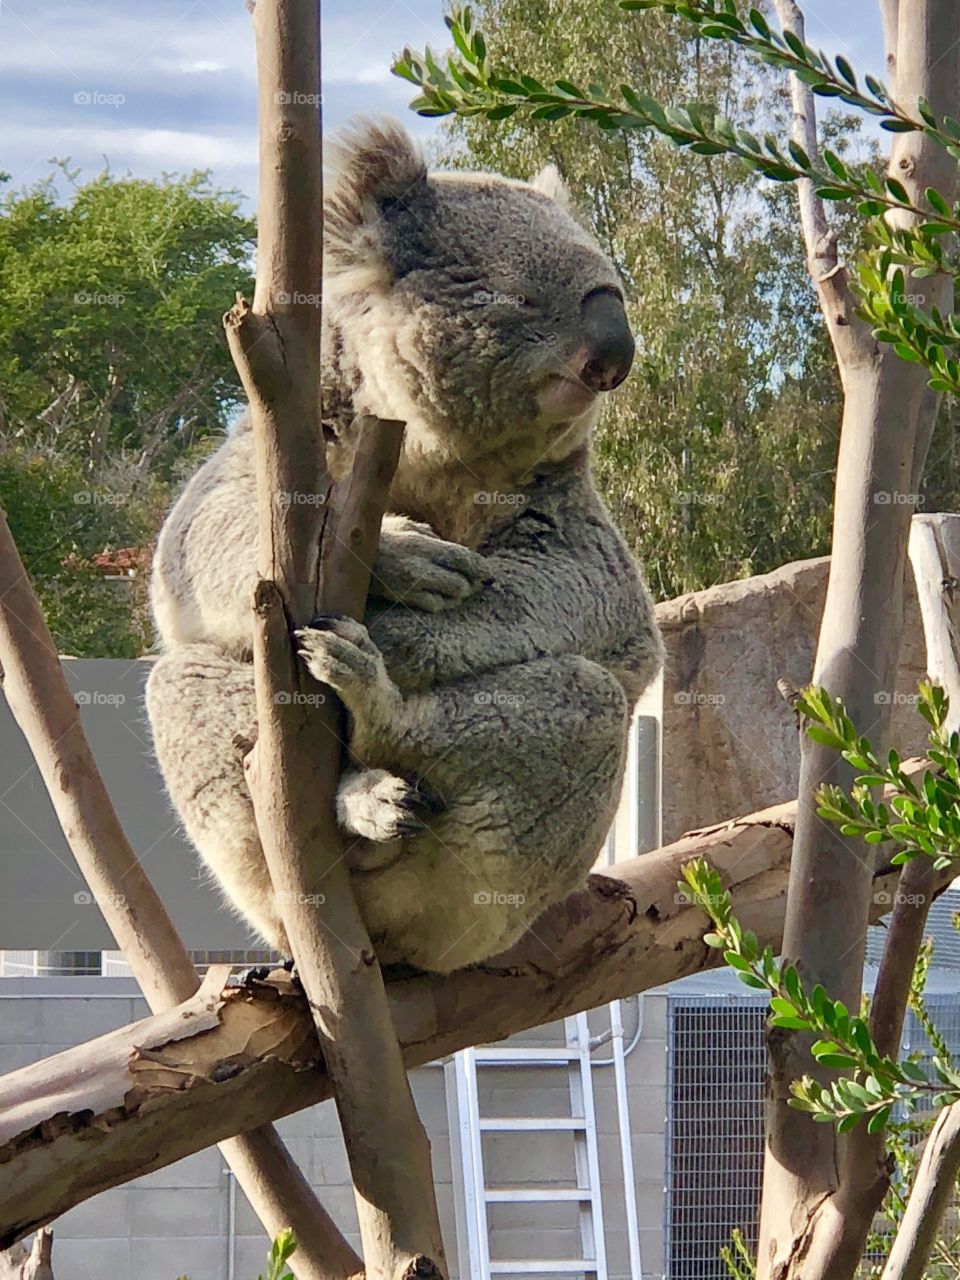 Koala right